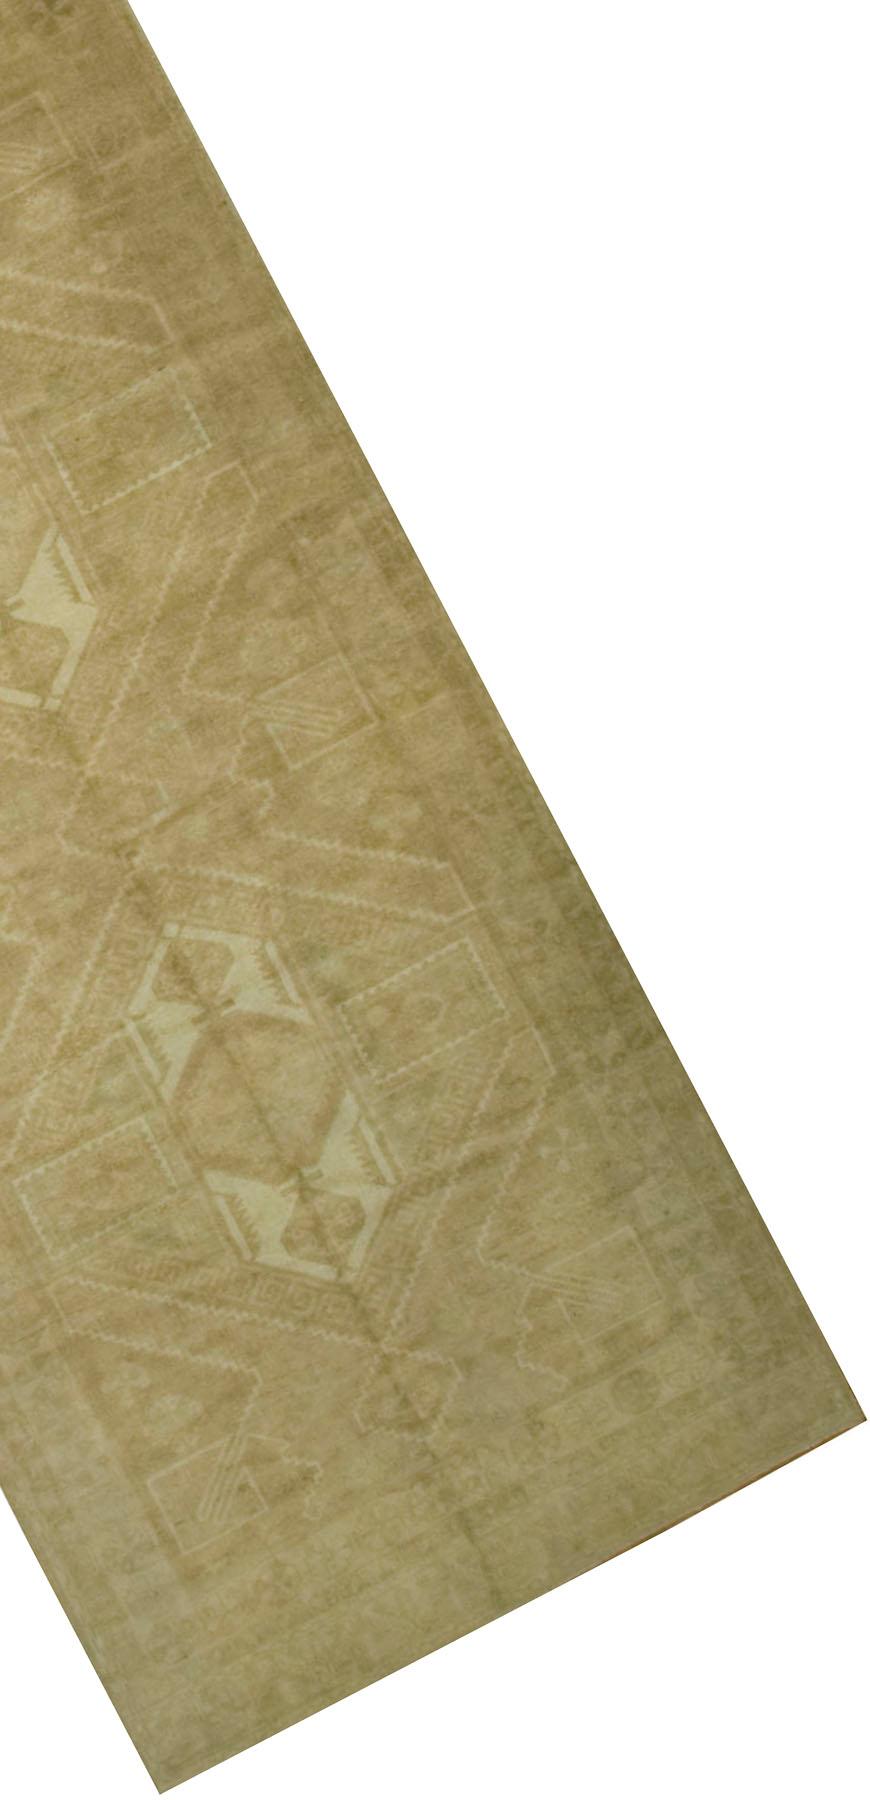 Tapis Oushak Turc Vintage Runner 5' X 11'3. Ces tapis attrayants conviennent à une grande variété d'endroits, mais l'effet significatif des Oushaks est qu'ils rassemblent l'espace, le rendant confortable et chaleureux. La technique artistique de